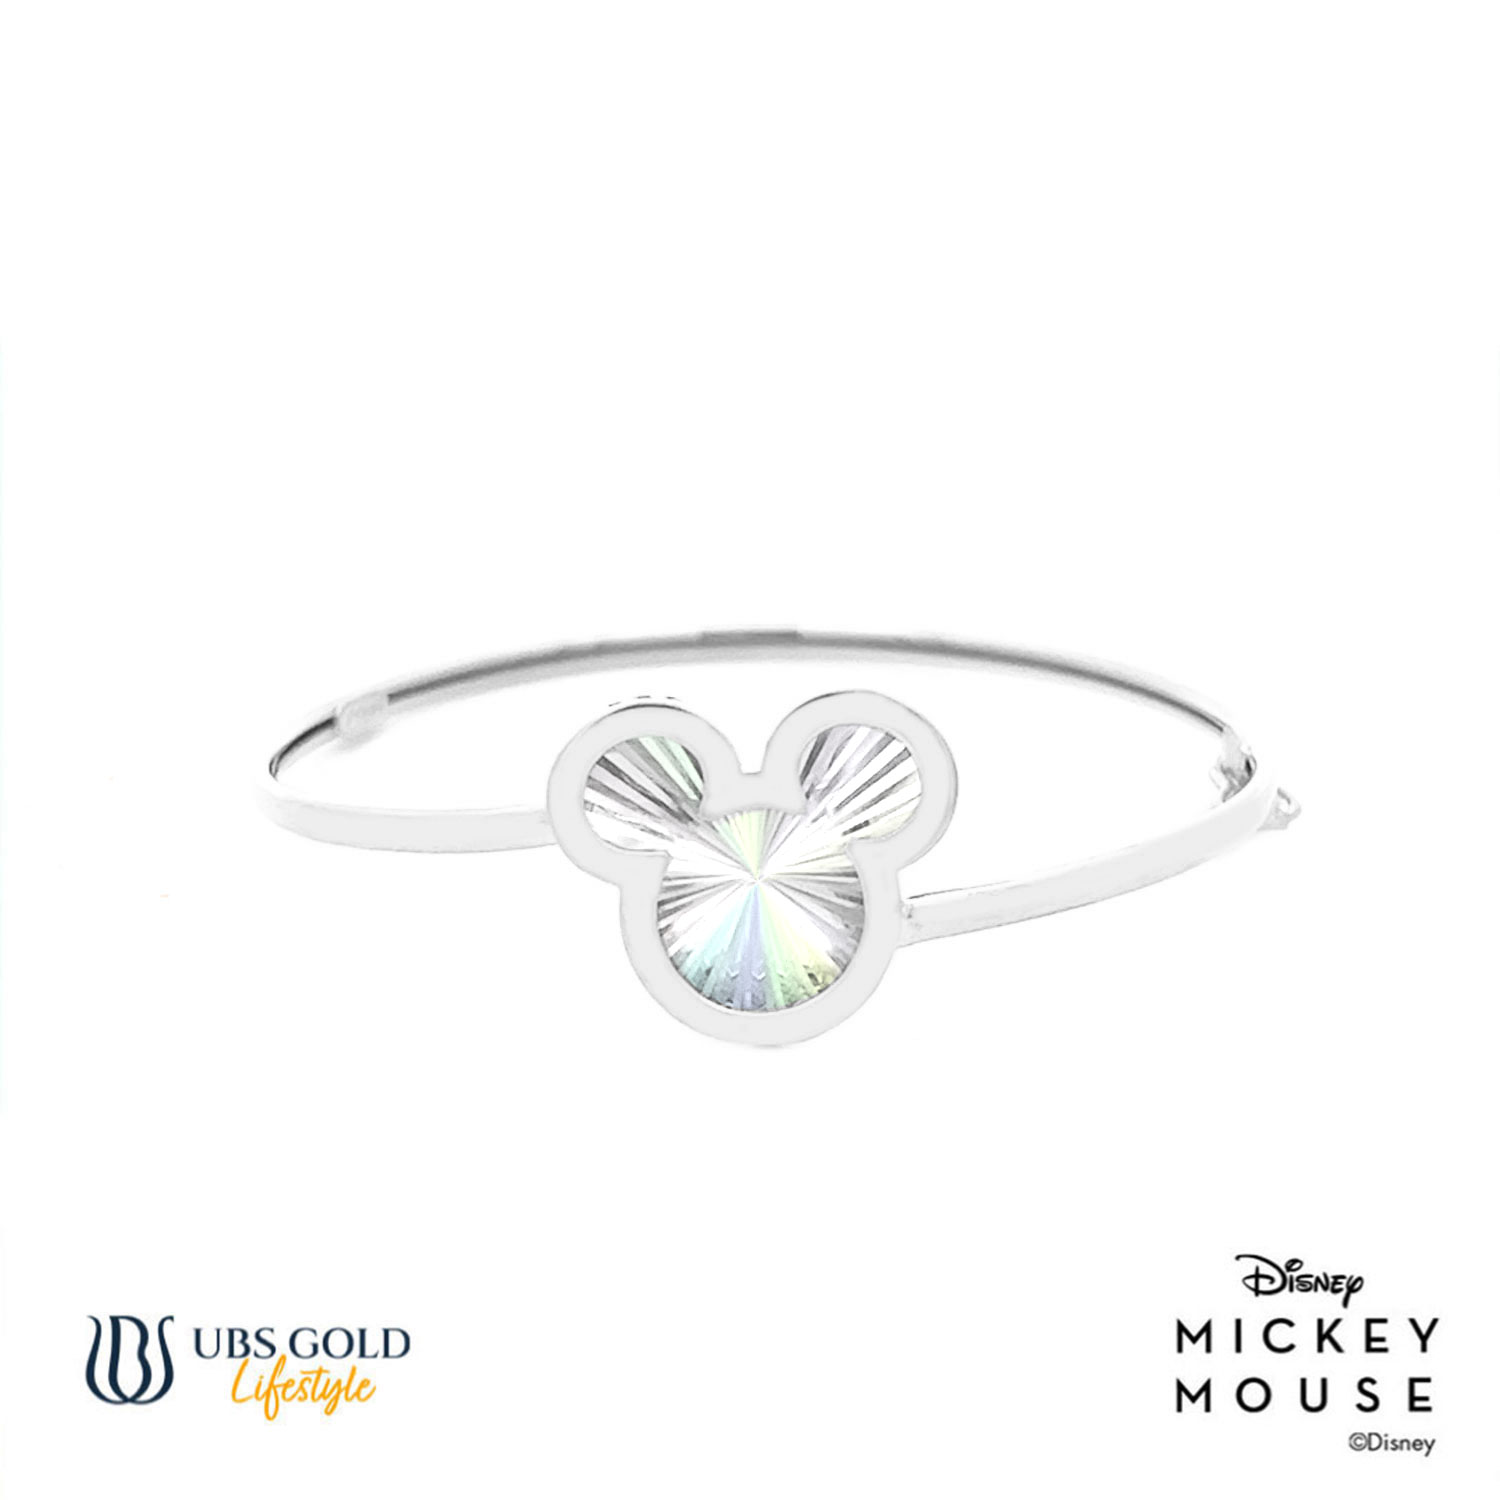 UBS Gold Gelang Emas Bayi Disney Mickey Mouse Rainbow - Vgy0146 - 17K